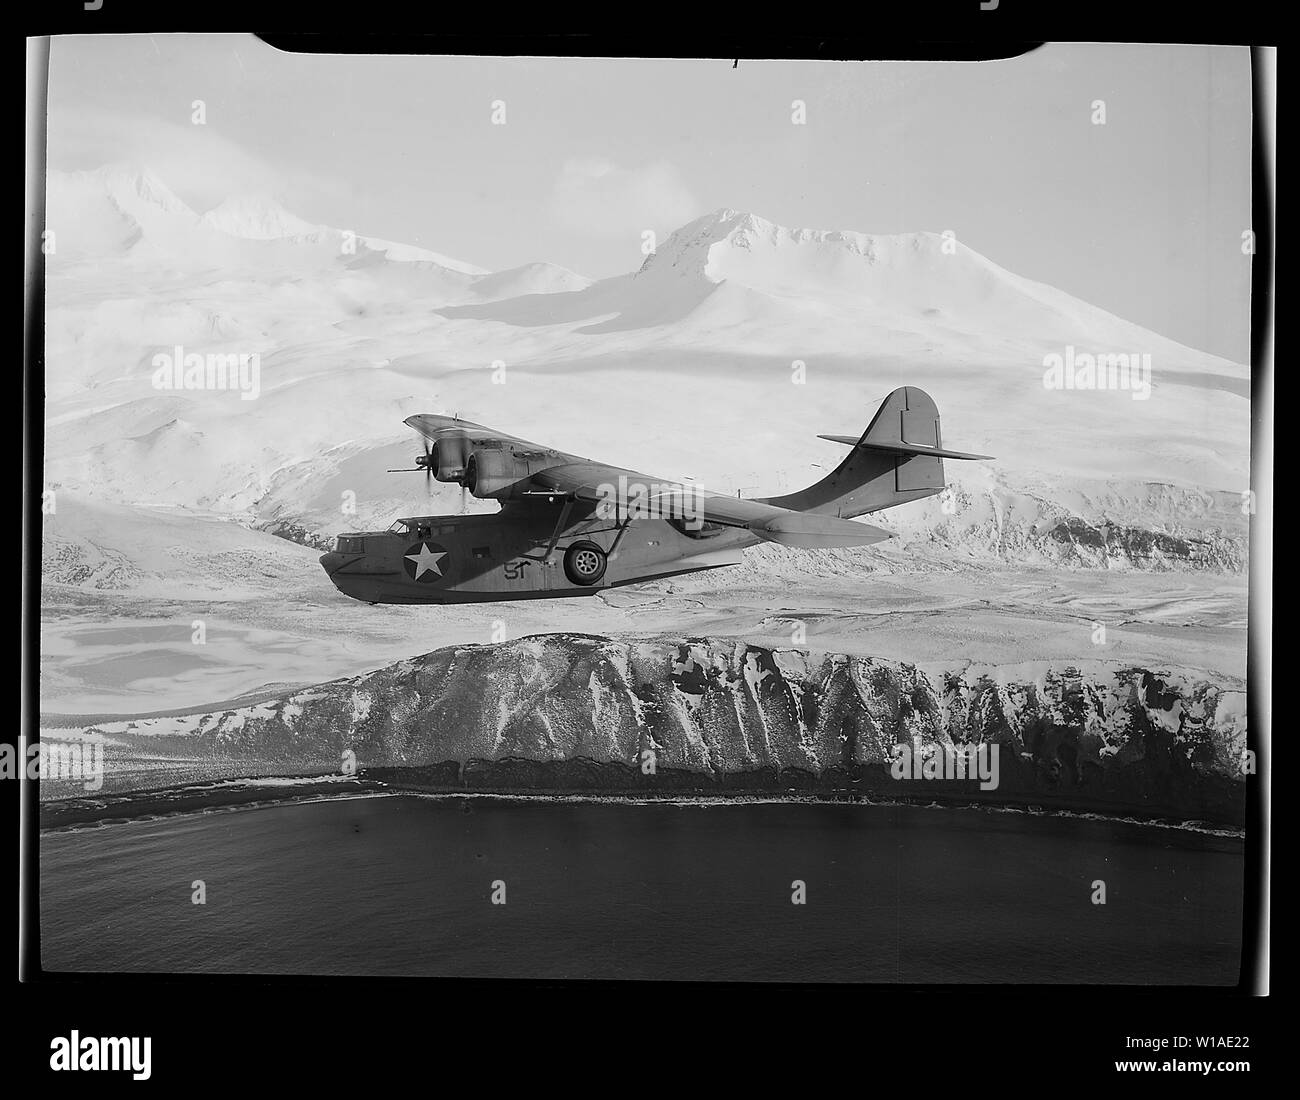 Eine PBY-5A Catalina Patrol bomber Kreuzfahrten Vor dem Hintergrund der schneebedeckten Berge in Aleutian Inseln, auf der Suche nach feindliche Aktivitäten.; Allgemeine Hinweise: Englisch: U.S. Navy Consolidated PBY-5A Catalina von Patrol squadron VP-61 über Alaska (USA), März 1943. Stockfoto